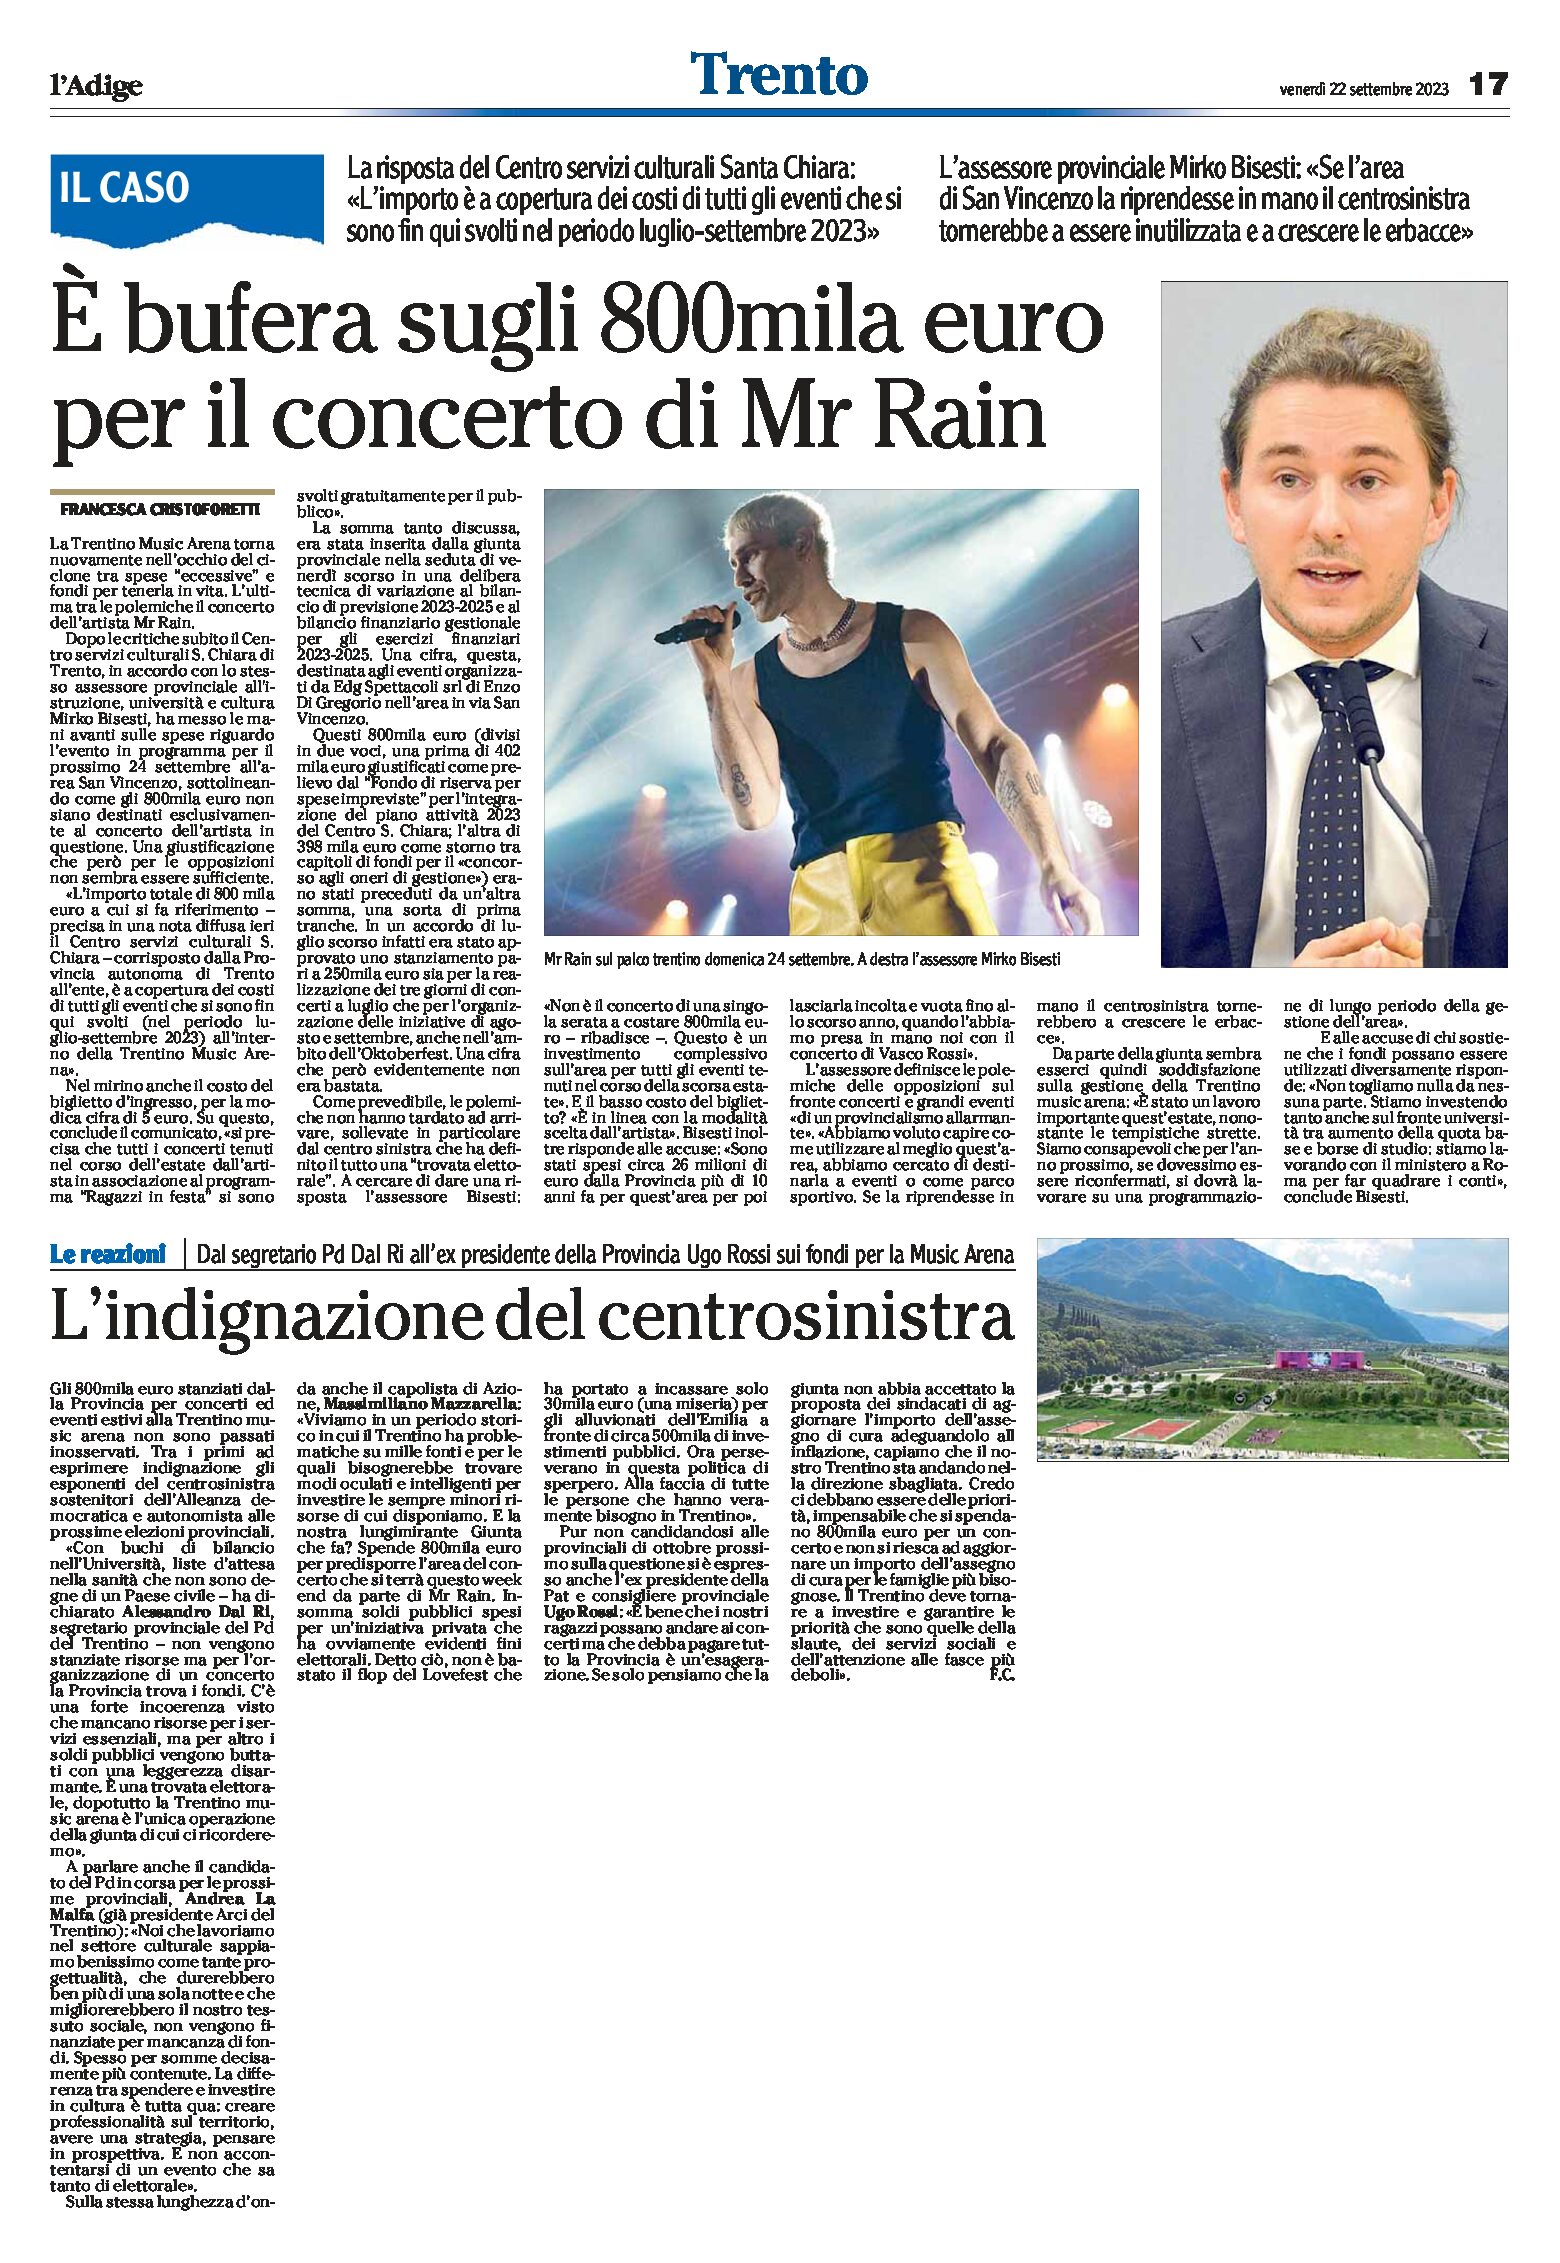 Trentino Music Arena: è bufera sugli 800mila euro per il concerto di Mr Rain